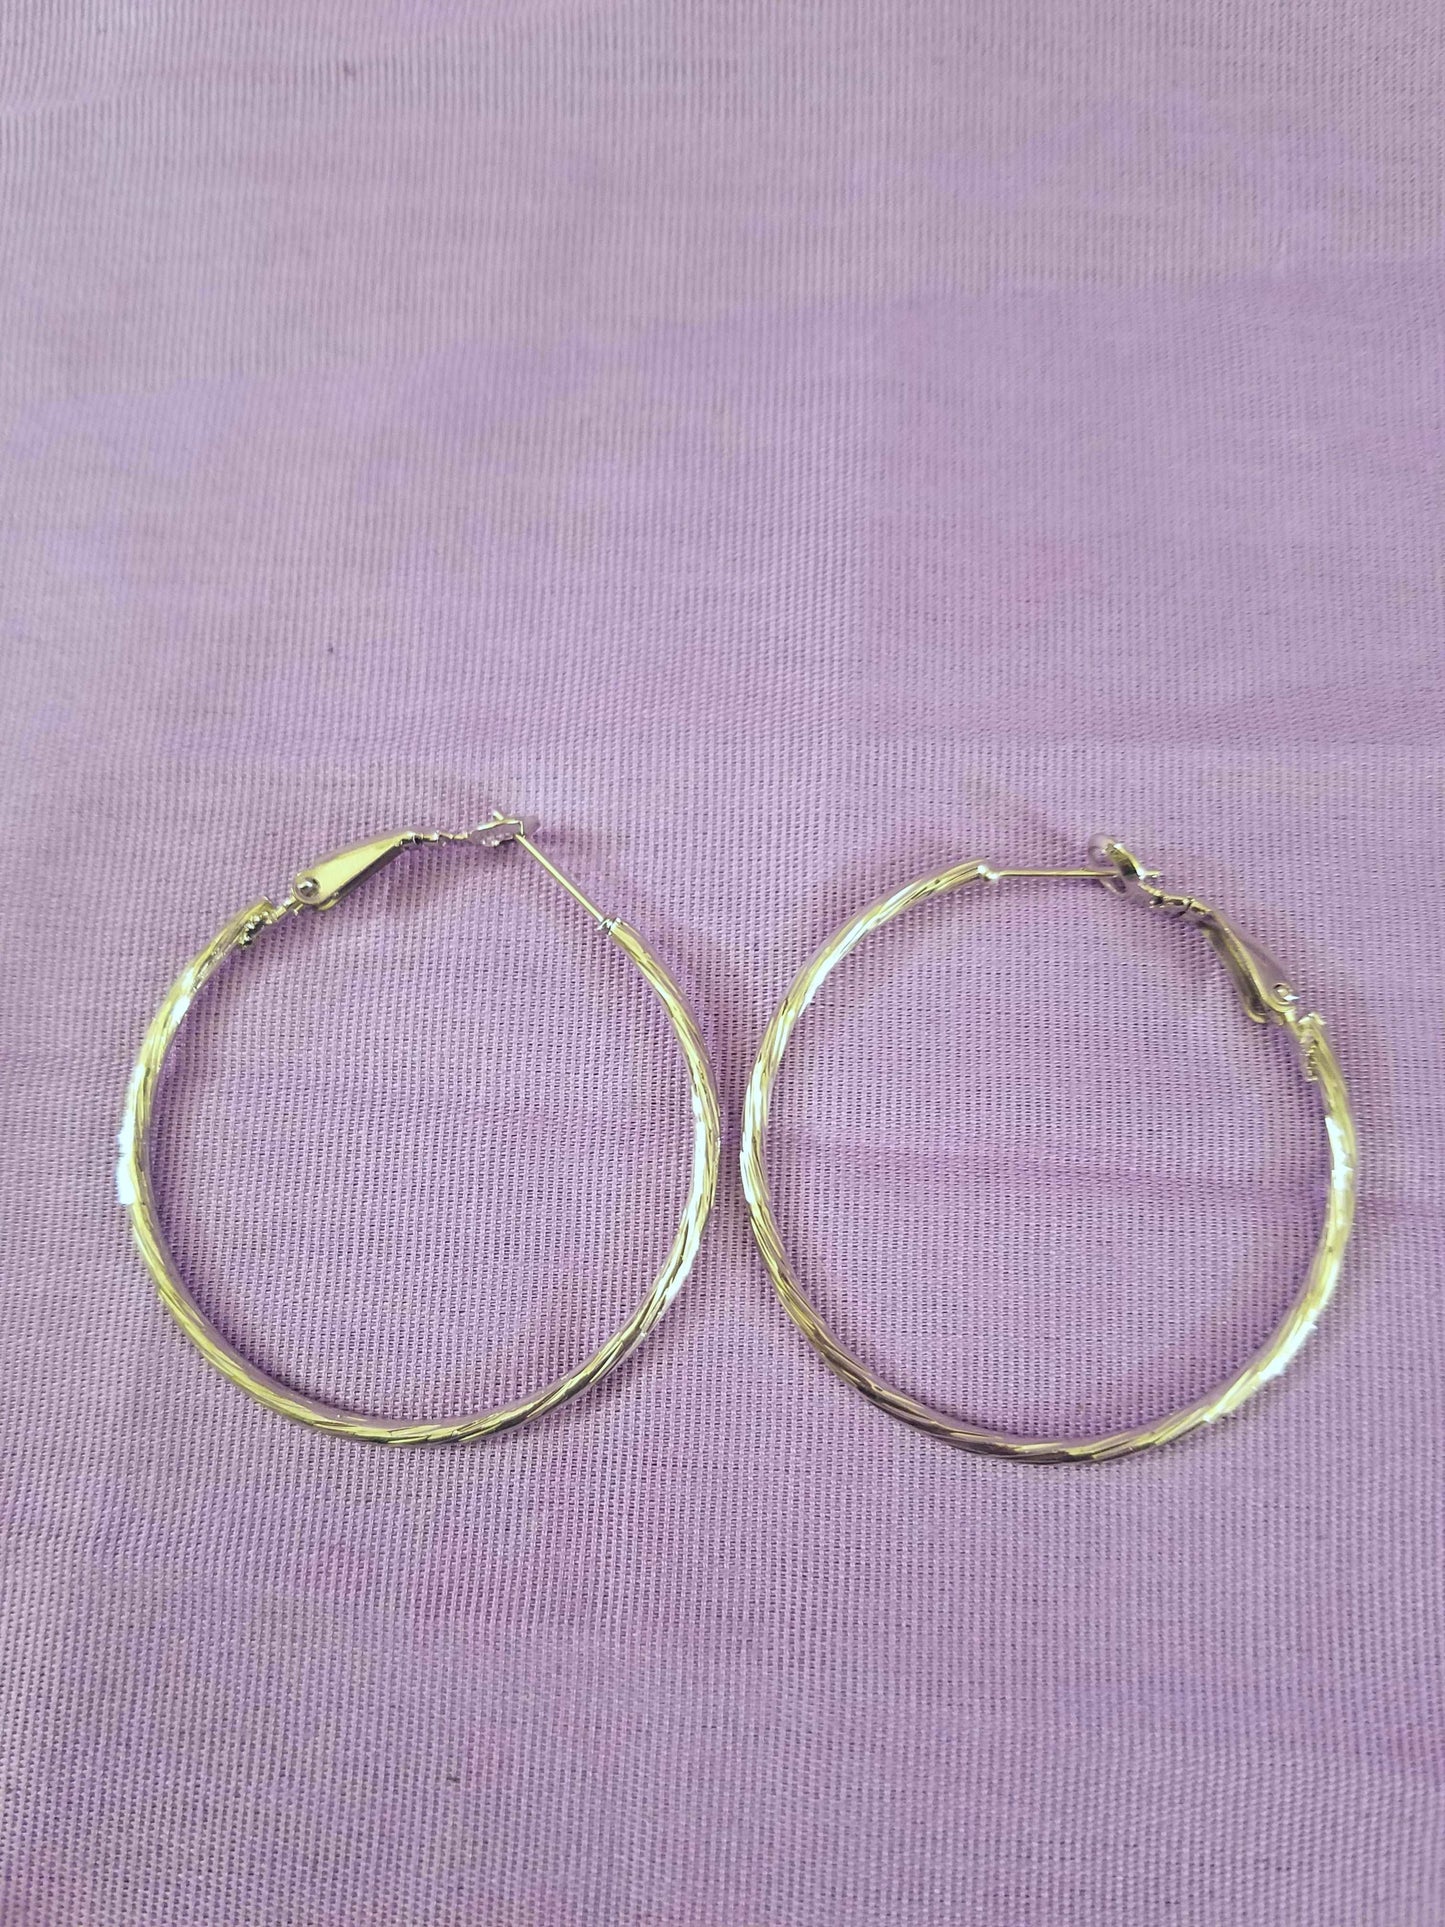 Nickel-Finished Hoop Earrings - 1 Pair